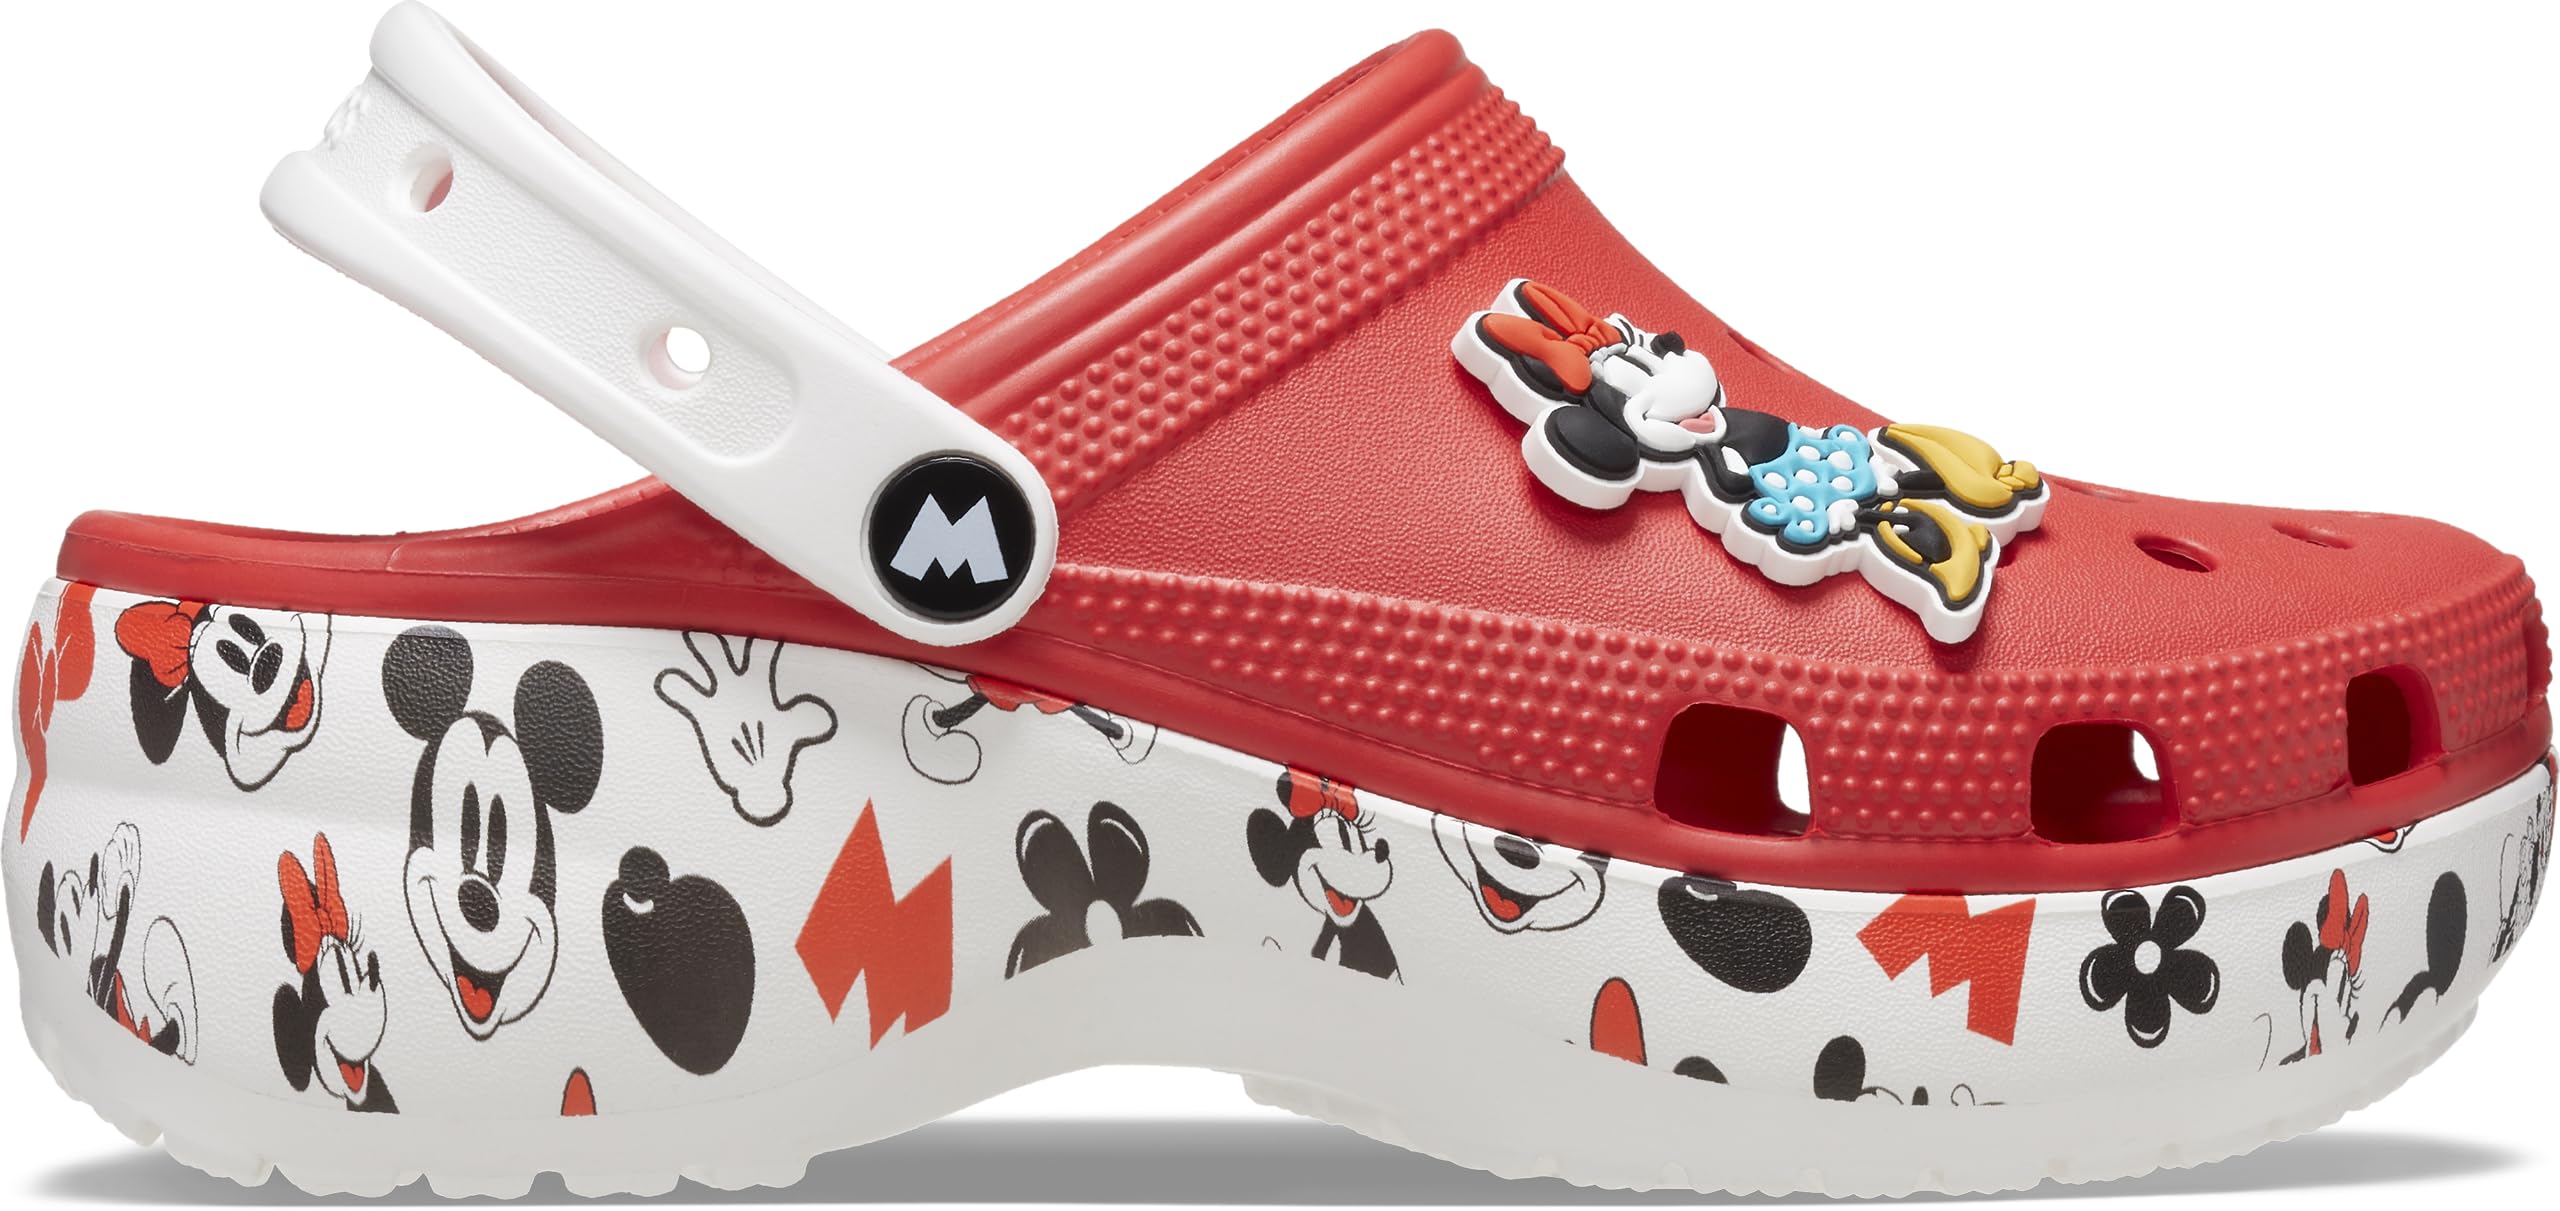 Crocs Women's Disney Minnie Mouse Classic Platform Clogs